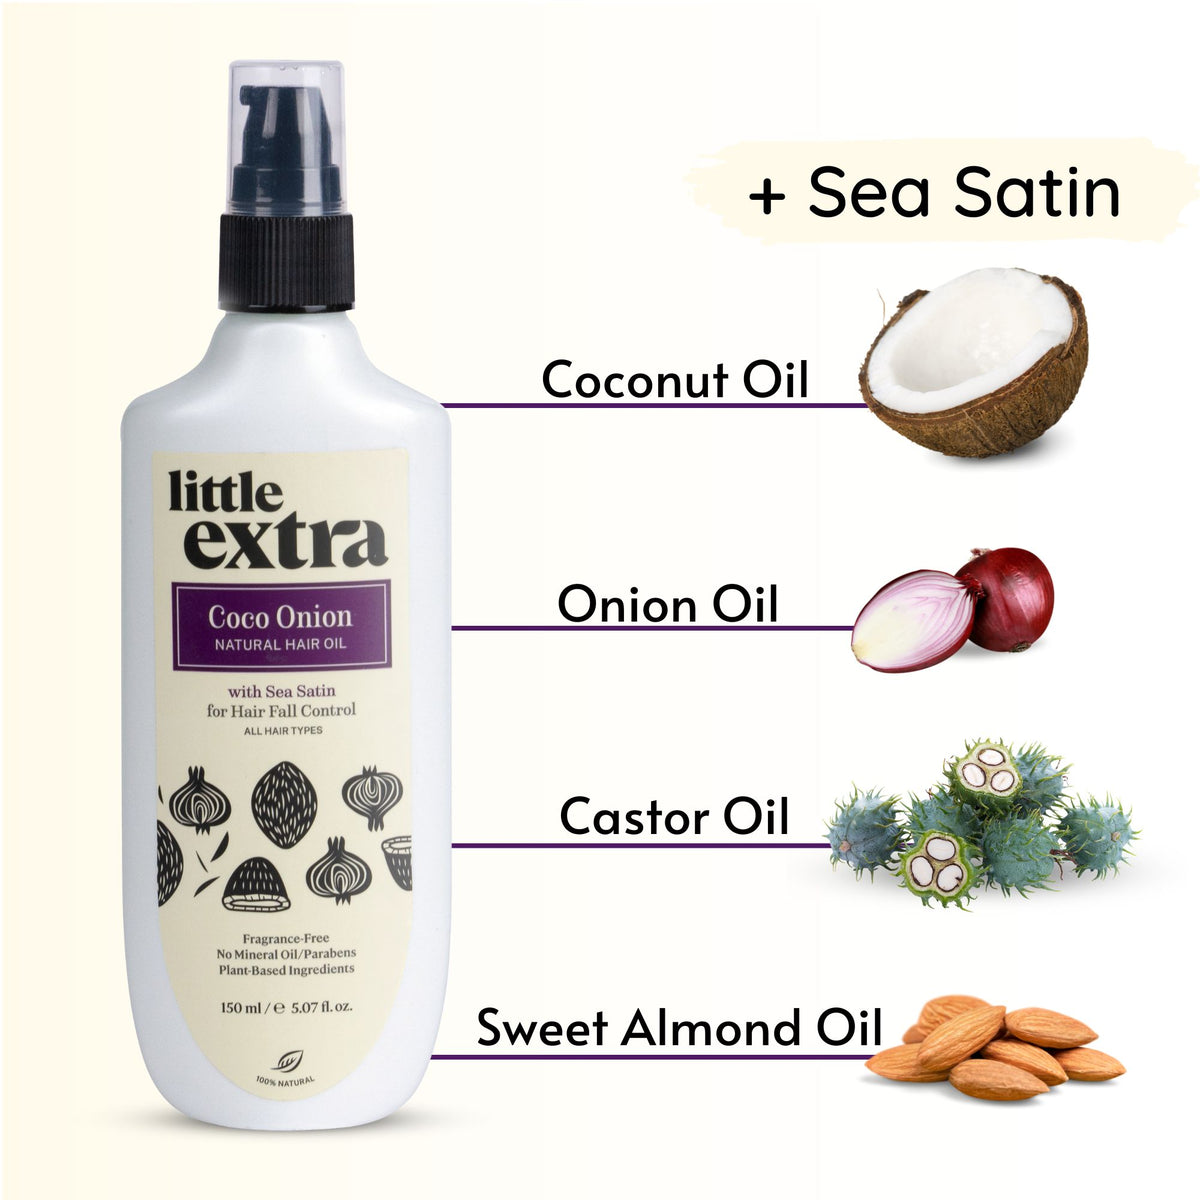 Coco Onion Natural Hair Oil